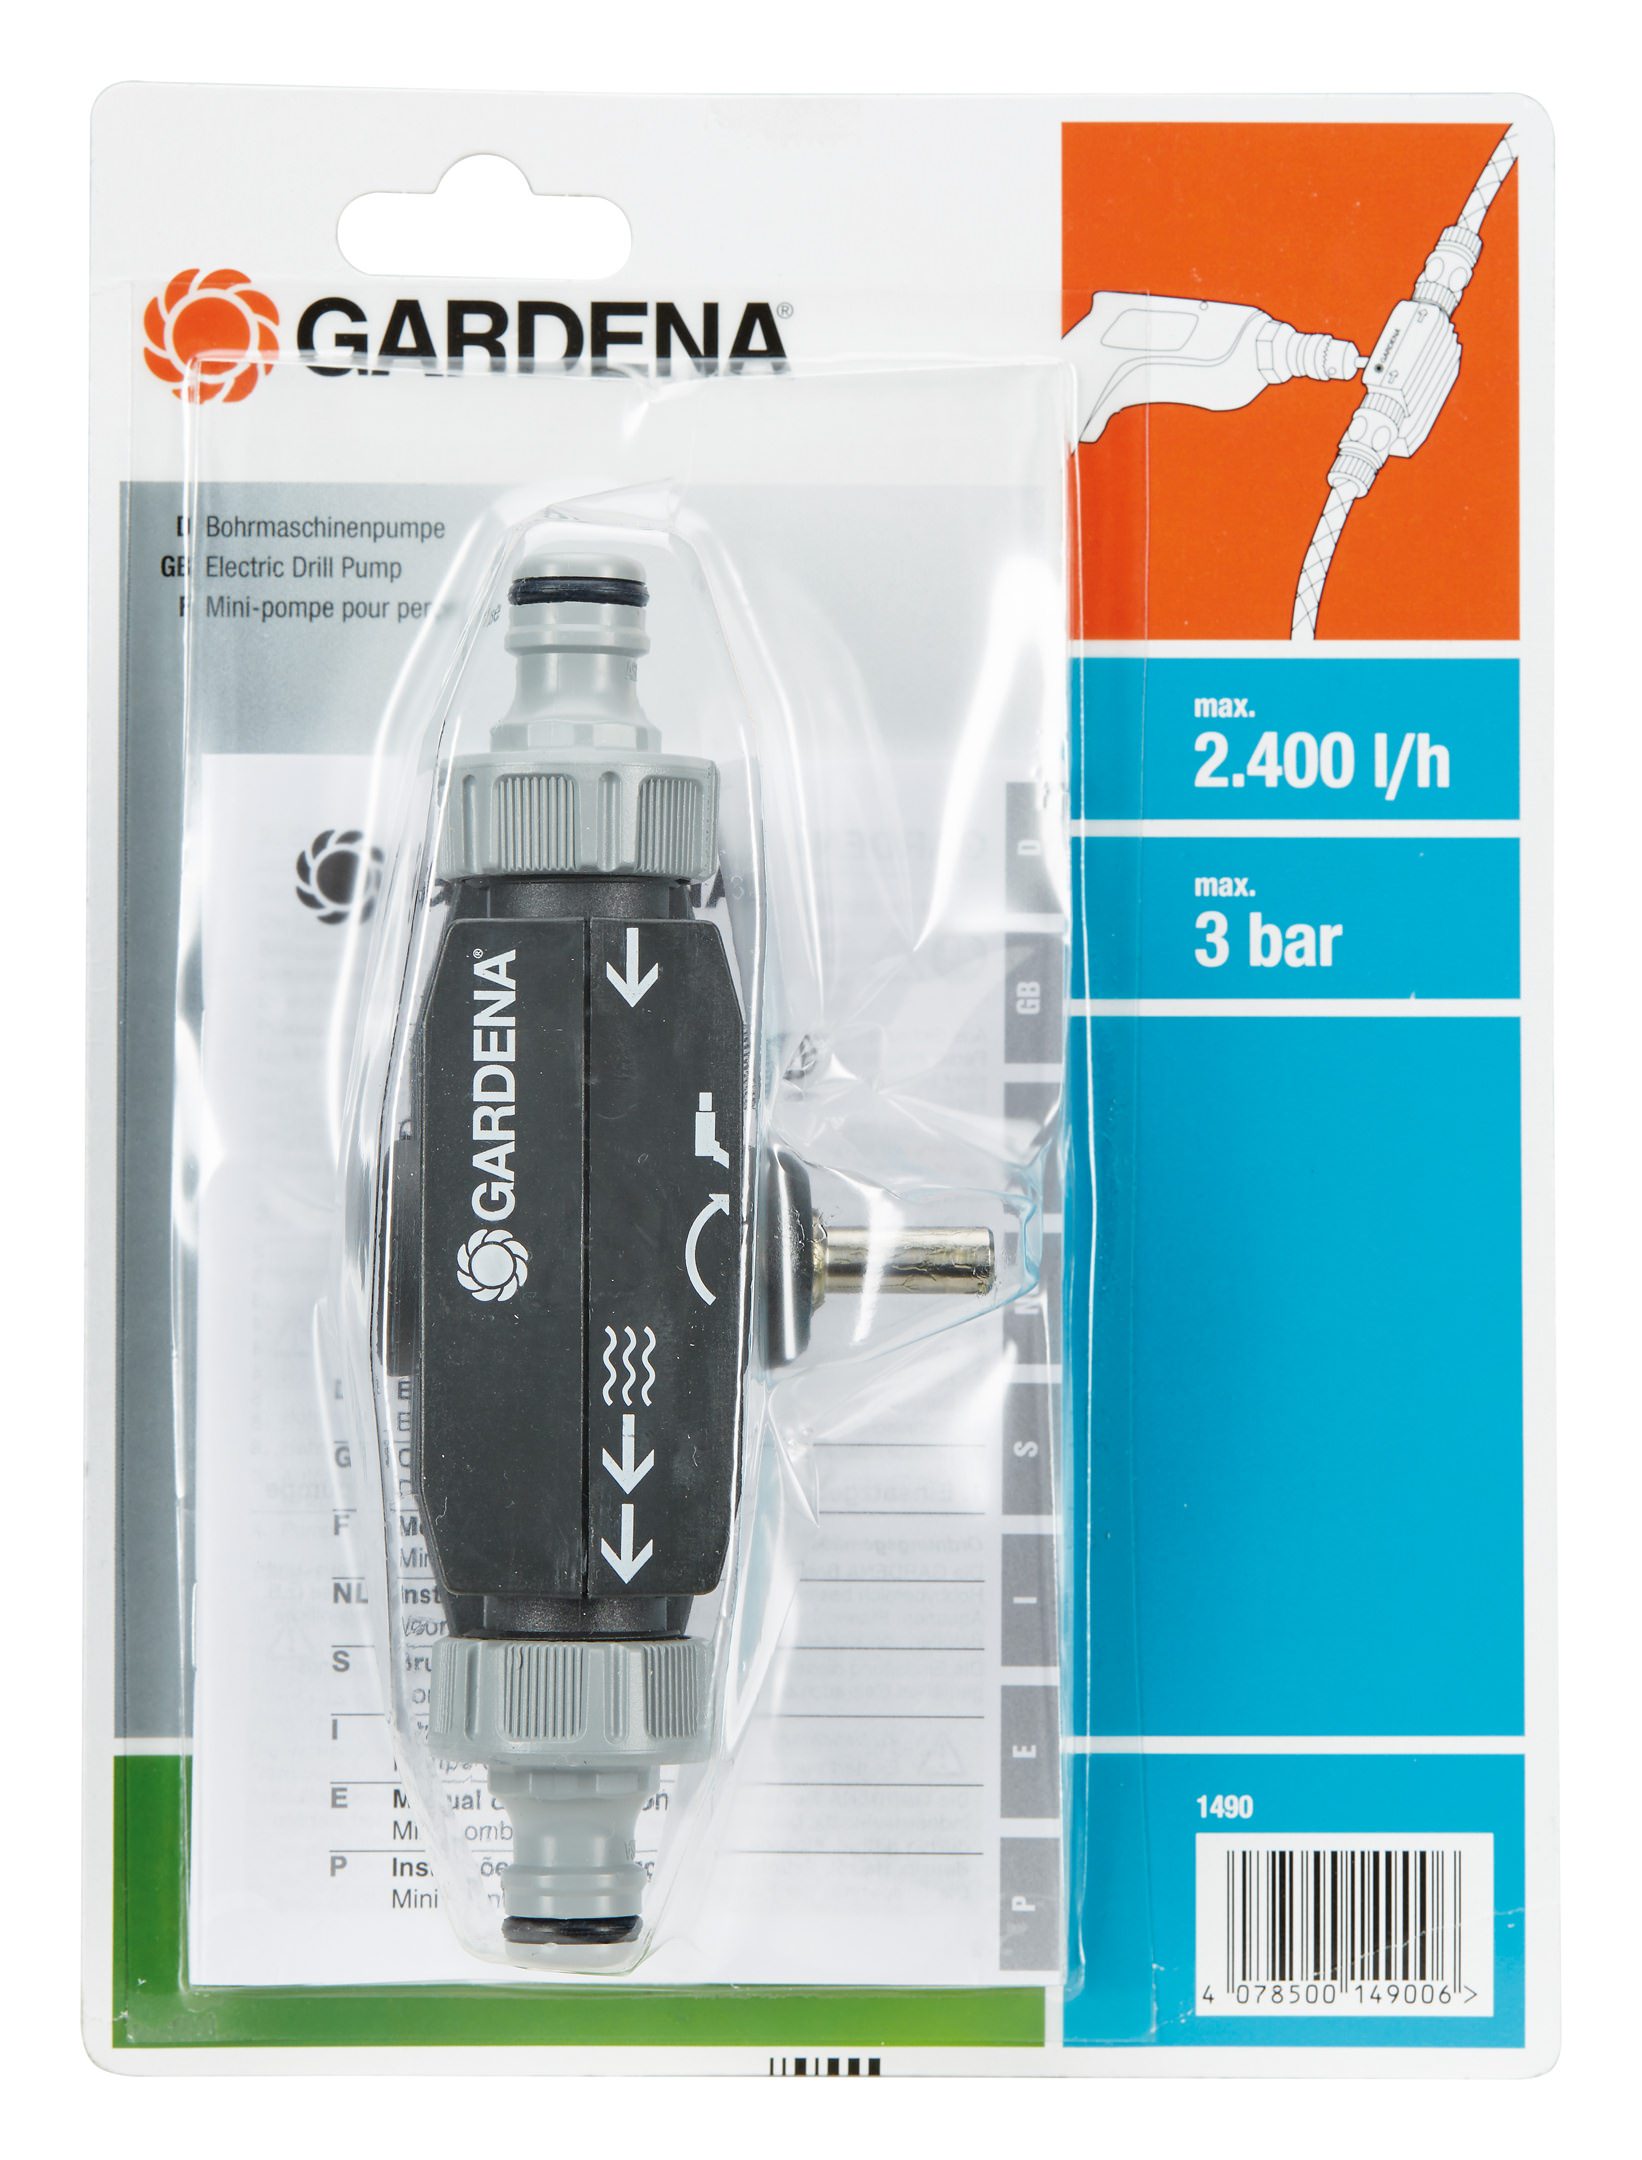 GARDENA Minipumpe Bohrmaschinenpumpe, 01490-20, 2.400 l/h max